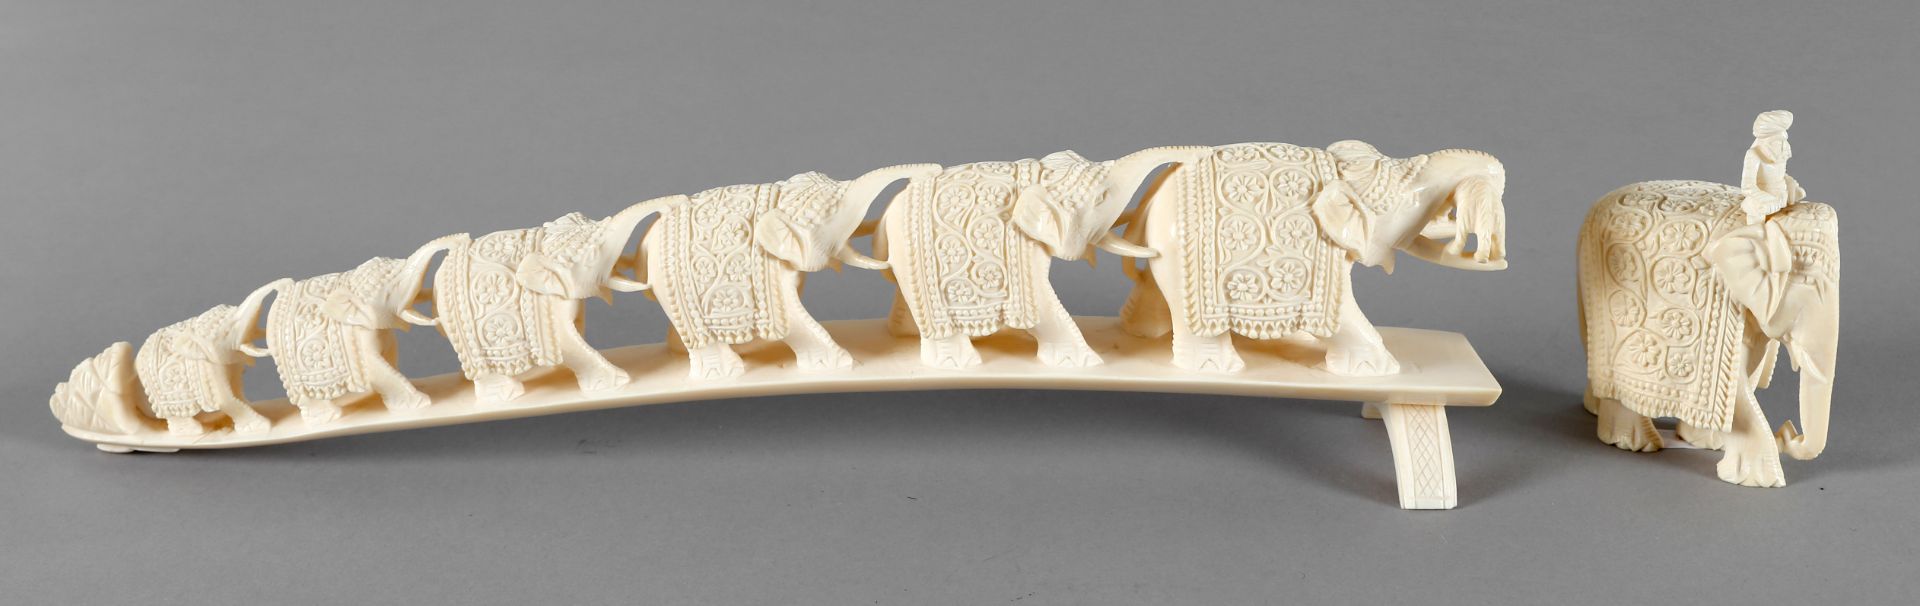 Zug von festlich geschmückten Elefanten, Elfenbein beschnitzt, China, Mitte 20. Jh. - Bild 2 aus 2